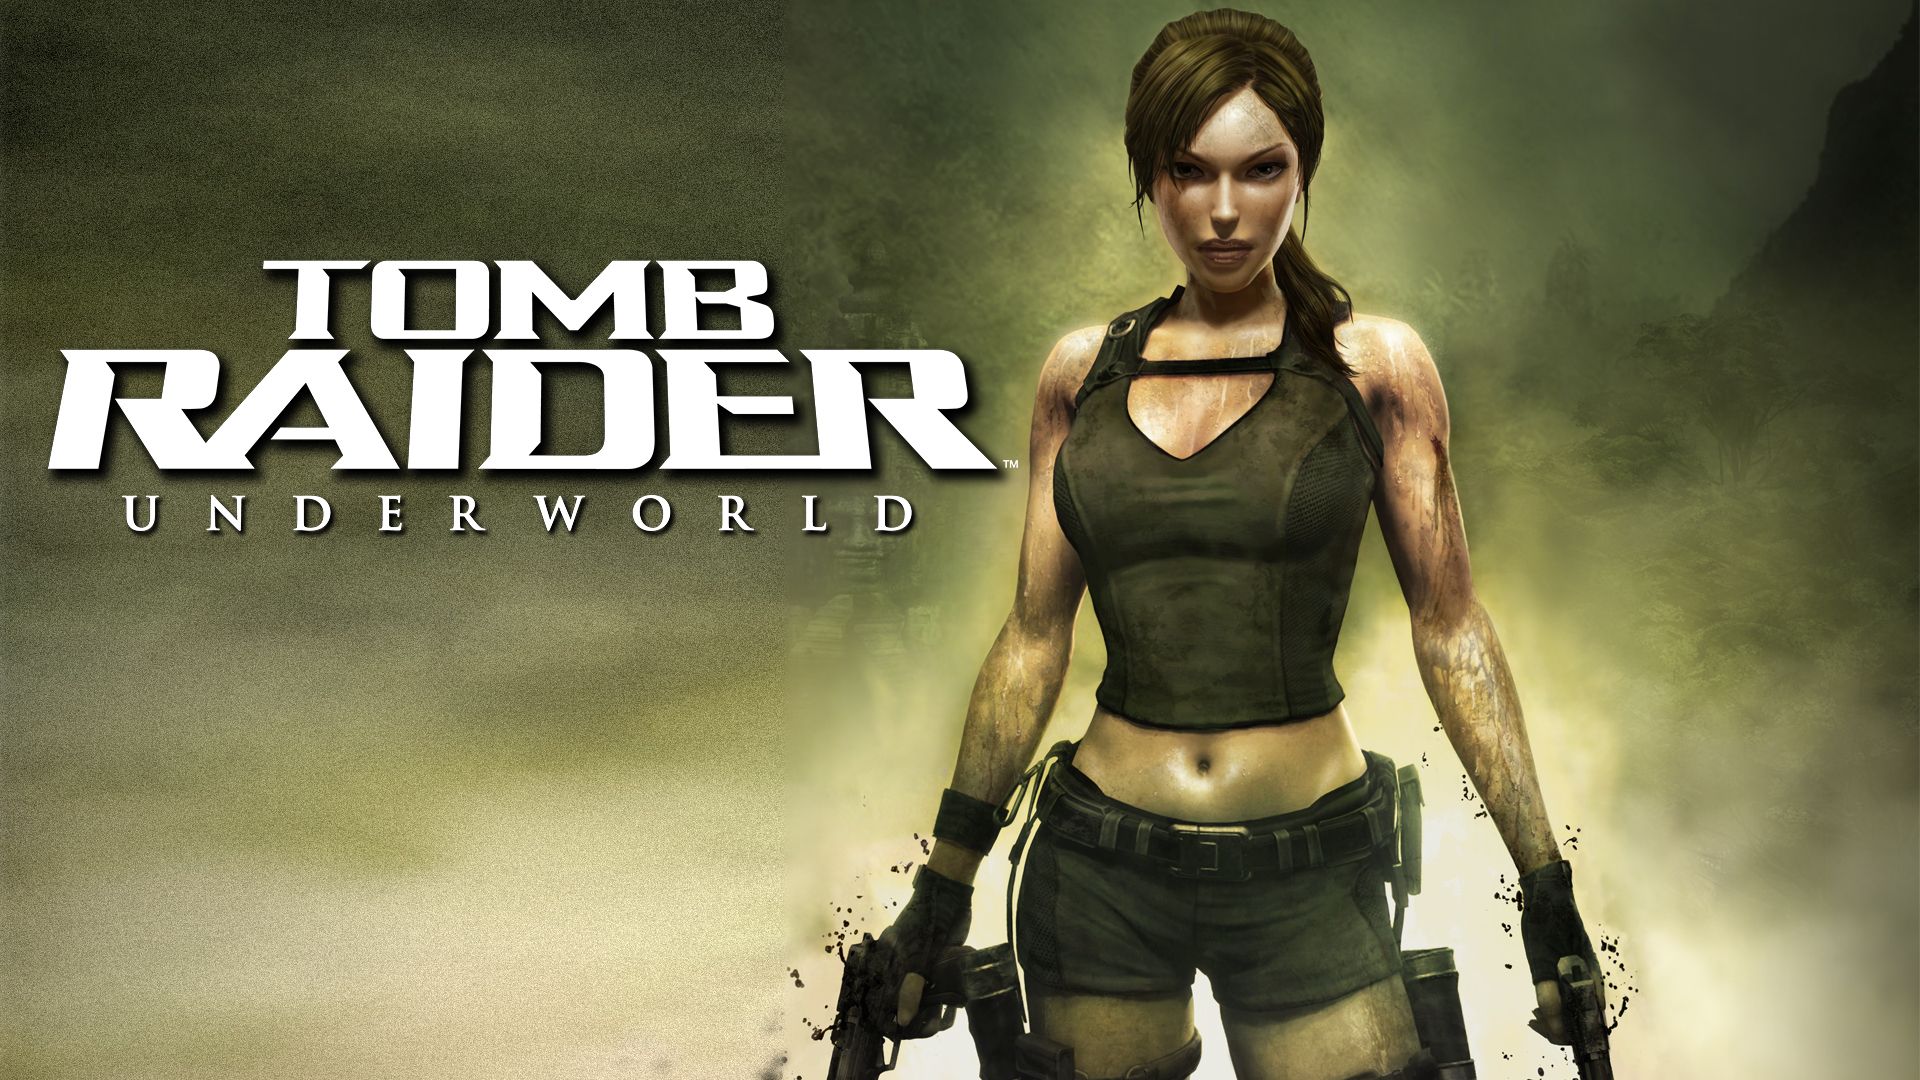 Прохождение игры Tomb Raider: Underworld # 12. HD - Full 1080p. (Русская версия игры)